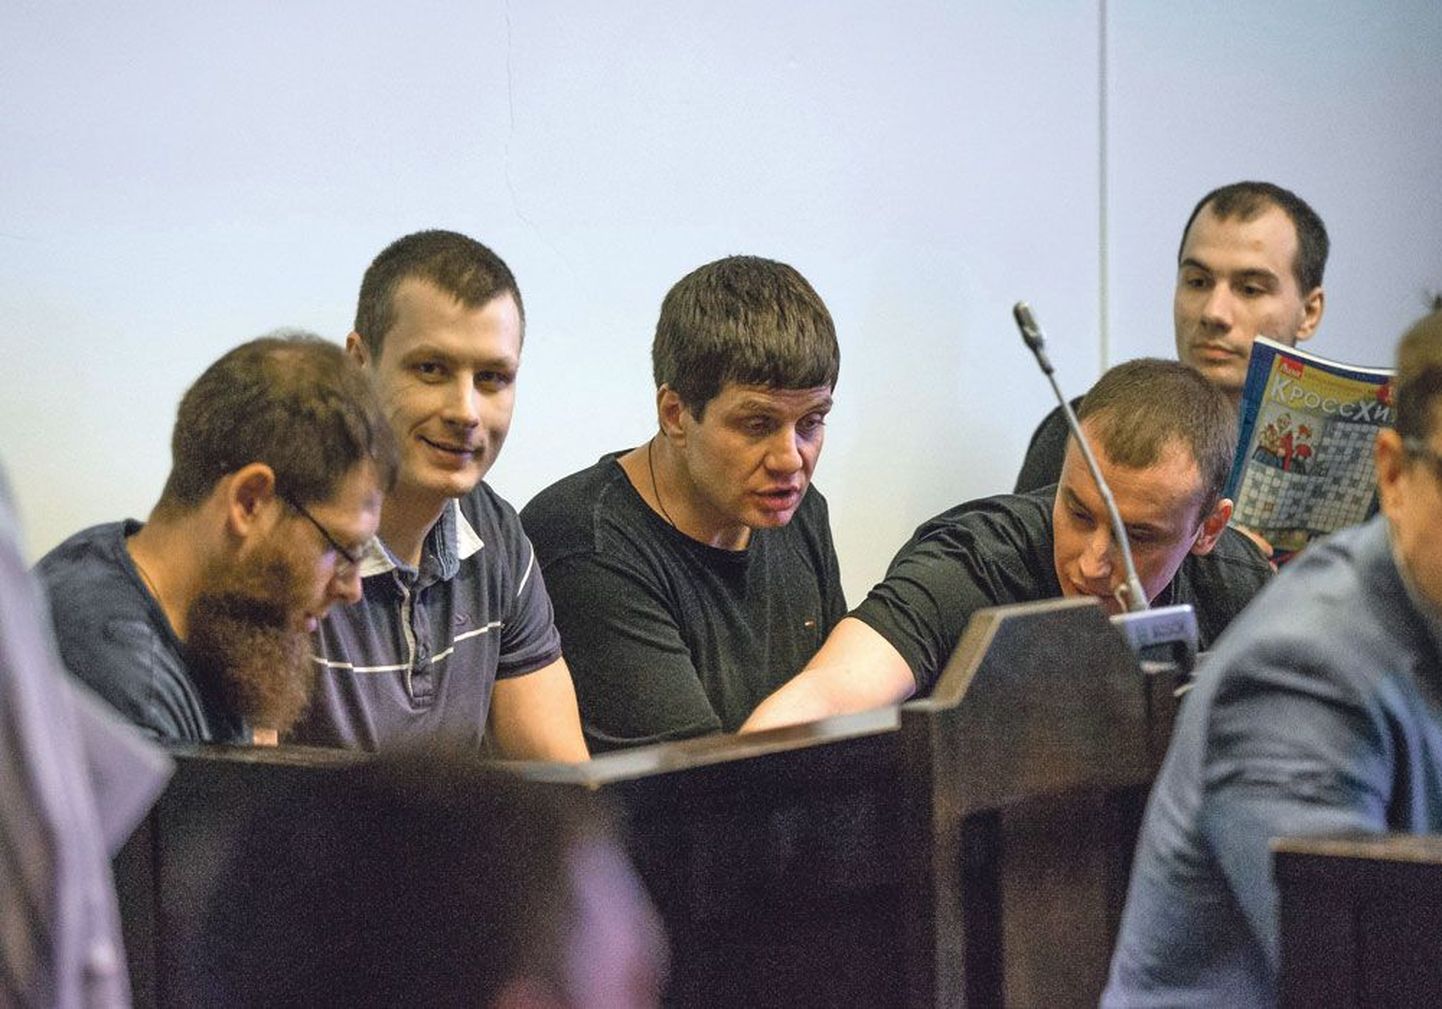 Тенгиз Худоев, Витас Малинаускас, Роман Воротников, Александр Чистов и Юрий Стрыгин на заседании суда, состоявшемся 2 августа.